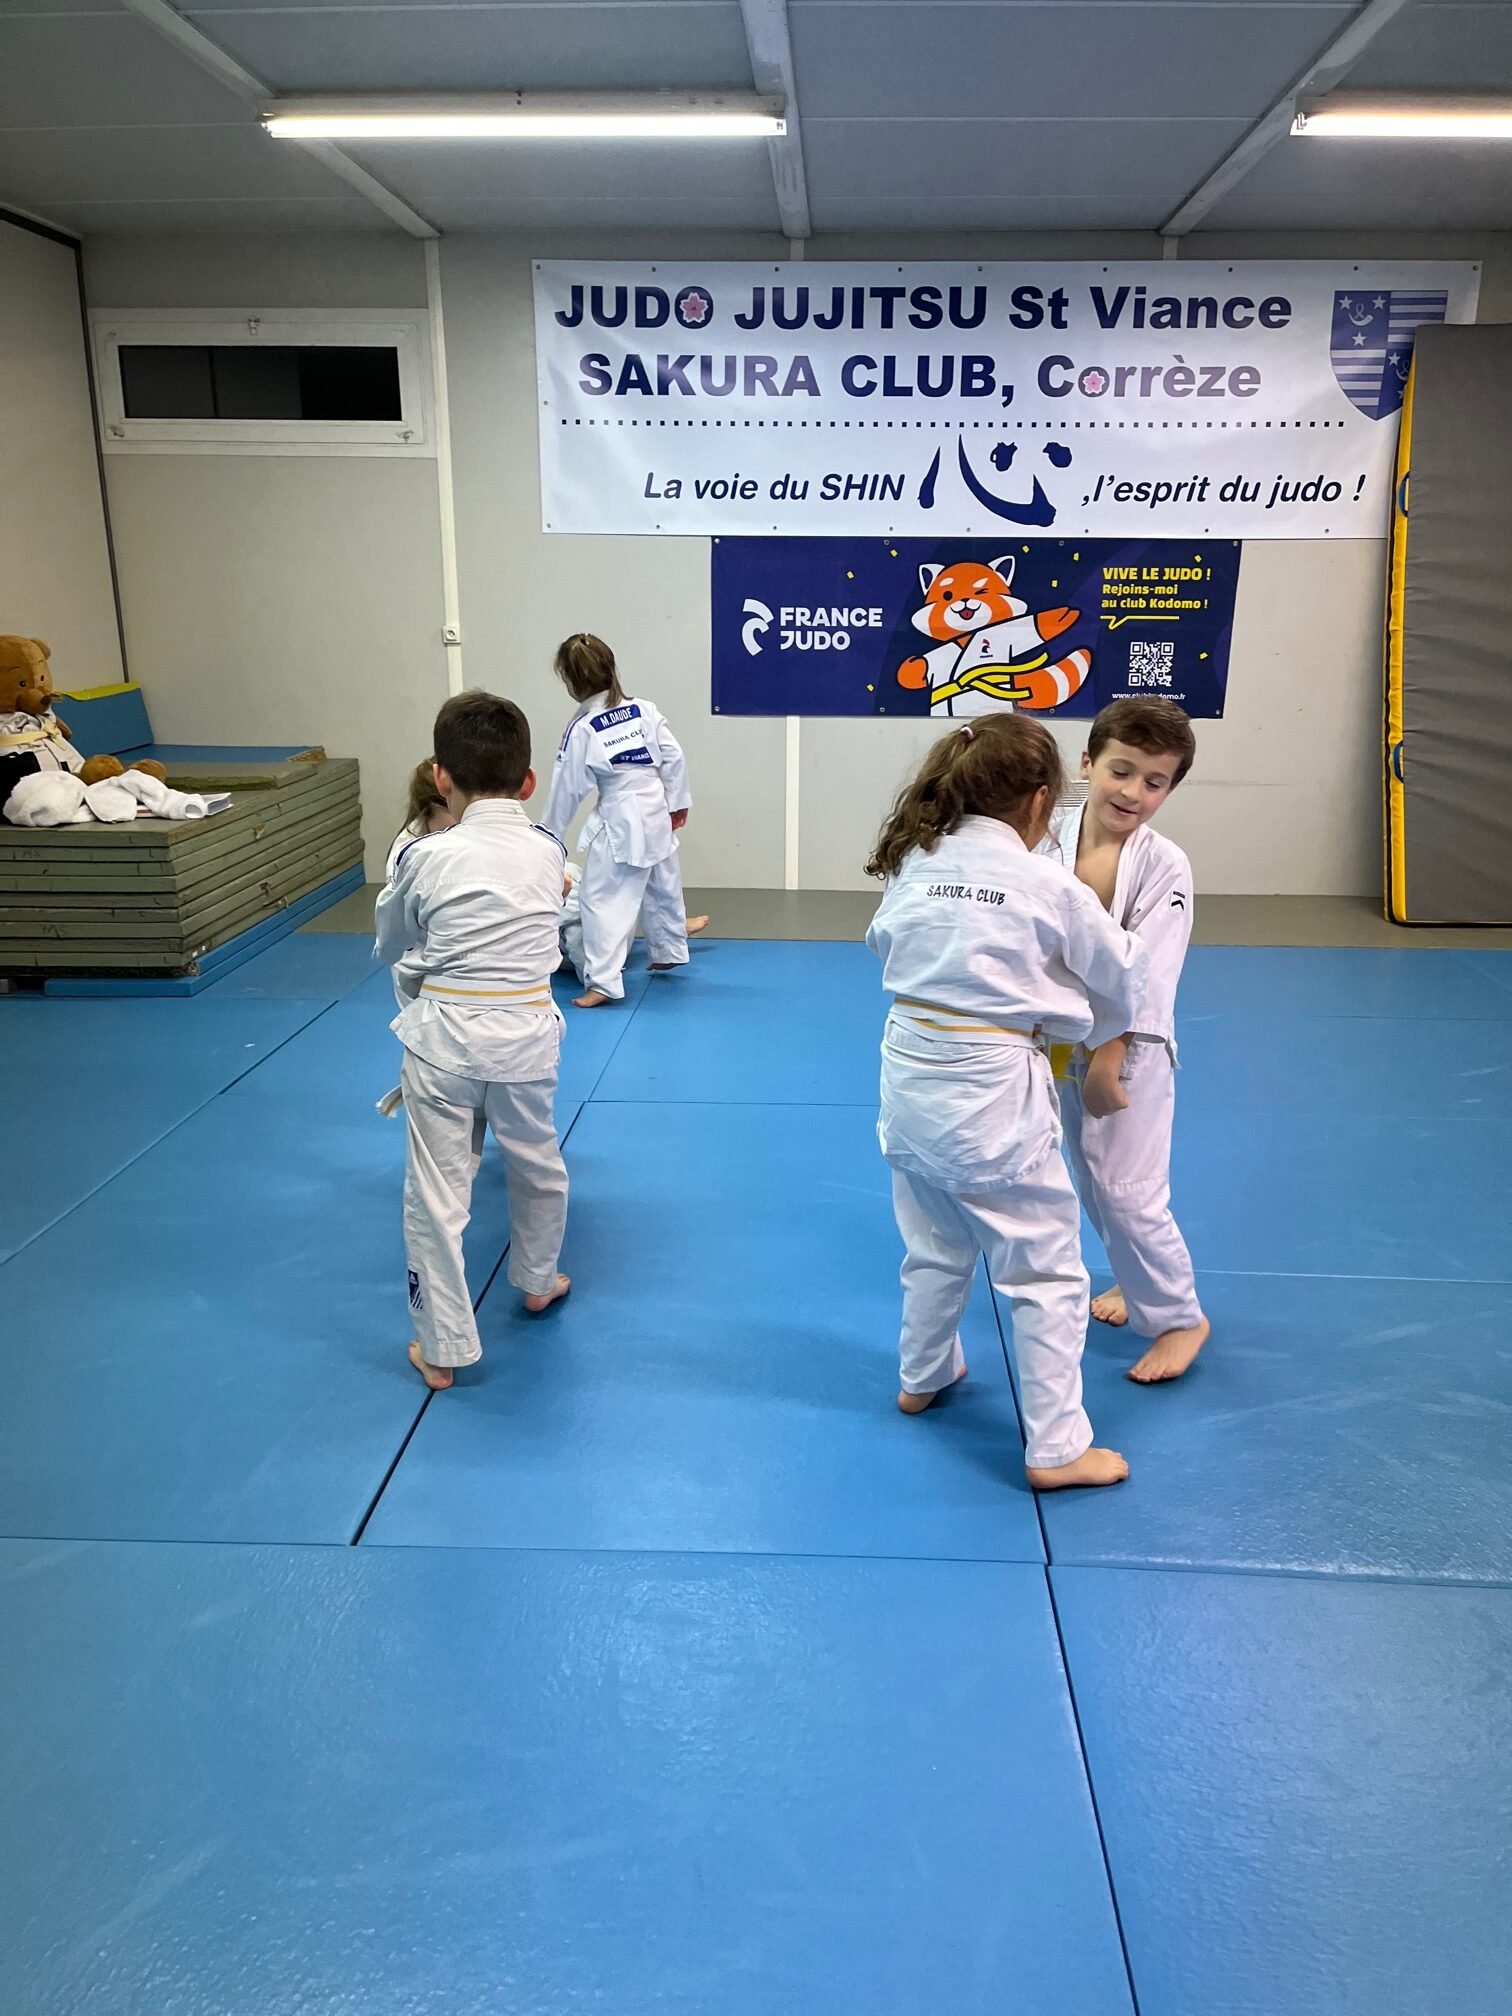 judo st viance